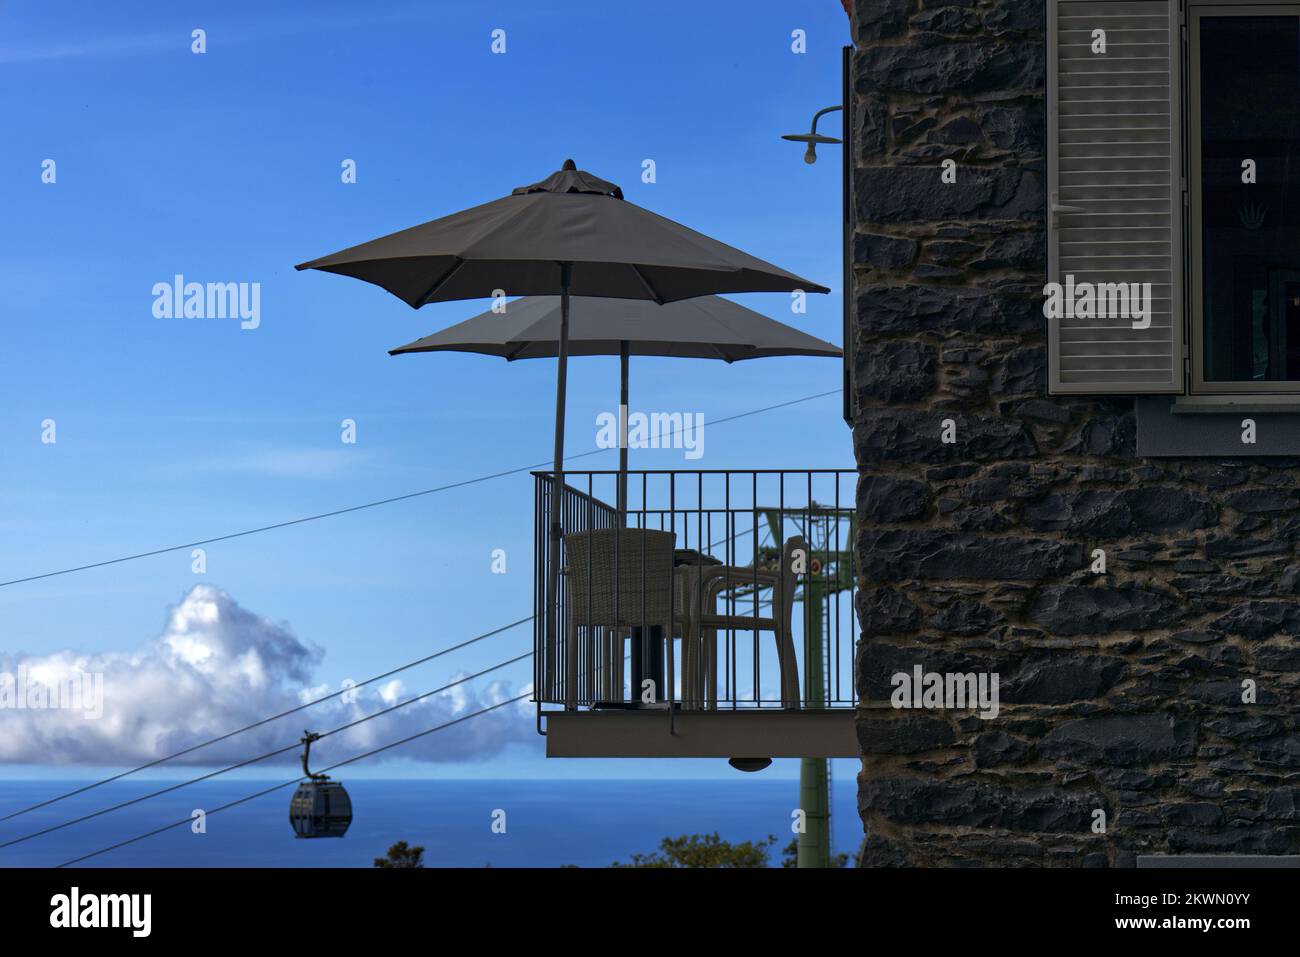 Funchal, isola di Madeira, Portogallo - ombrelloni sul balcone alto caffè a Monte con funivia che si avvicina alla stazione della funivia sullo sfondo Foto Stock